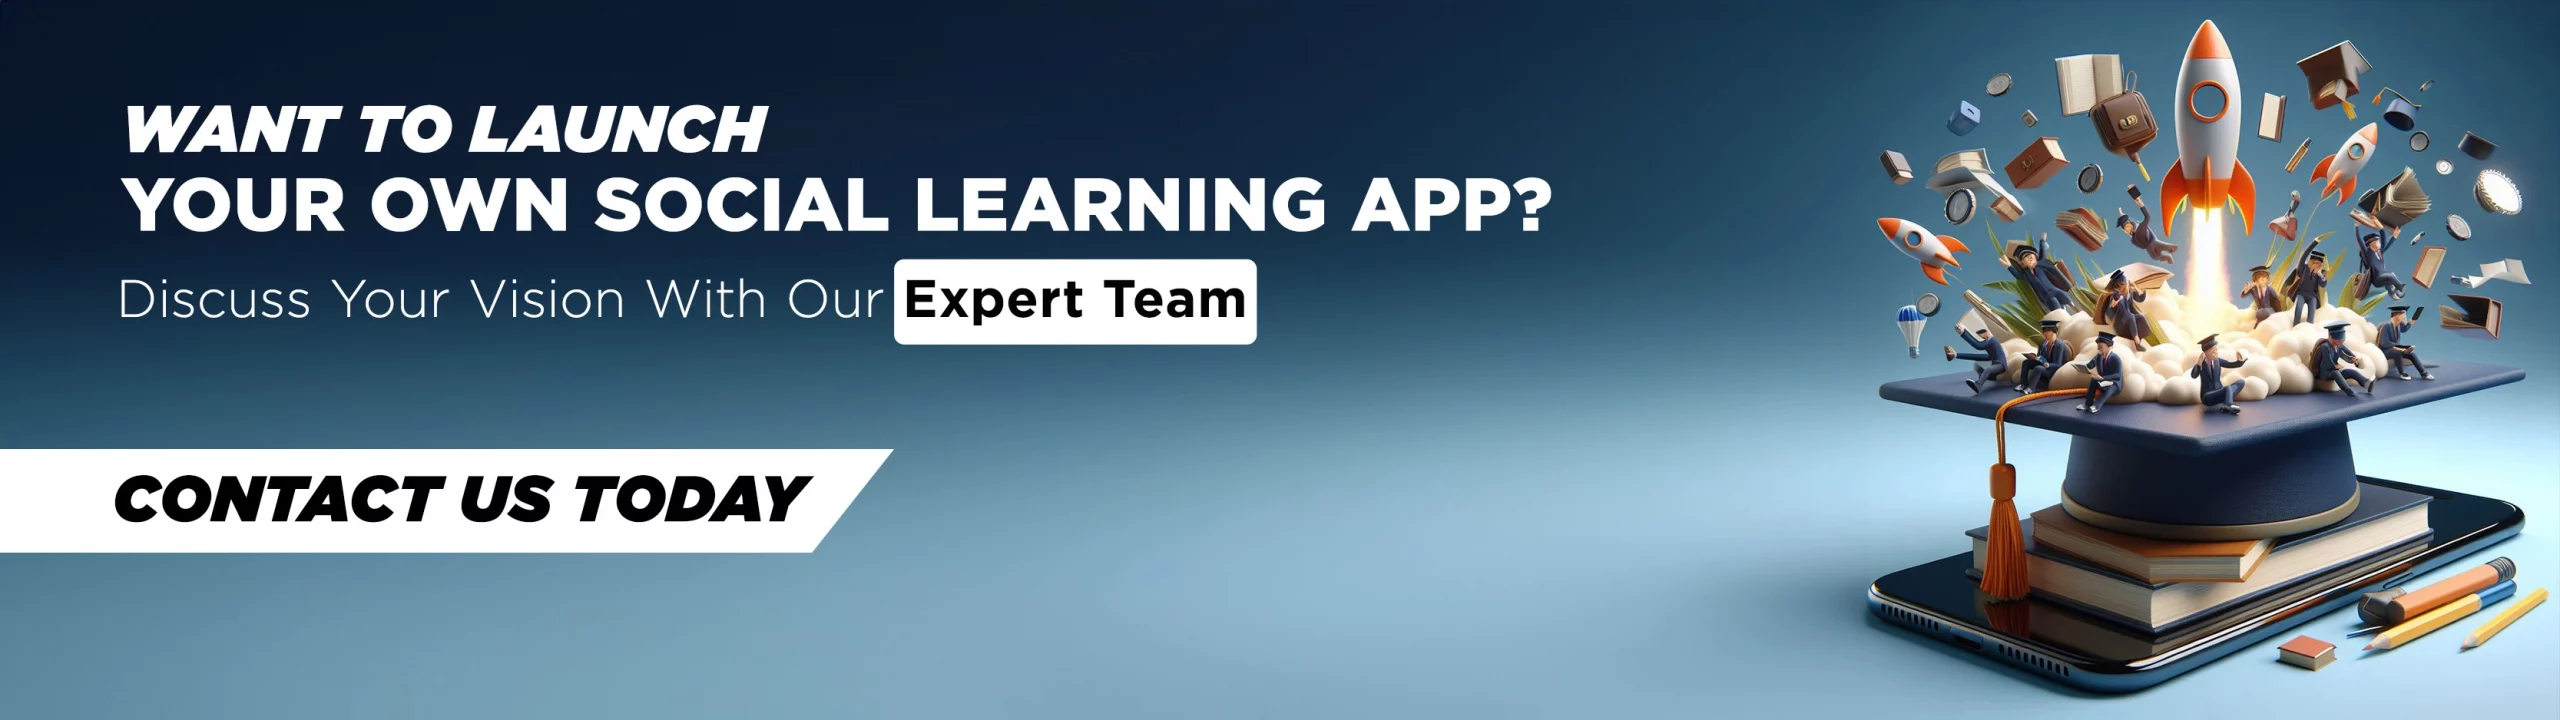 social-learning-app